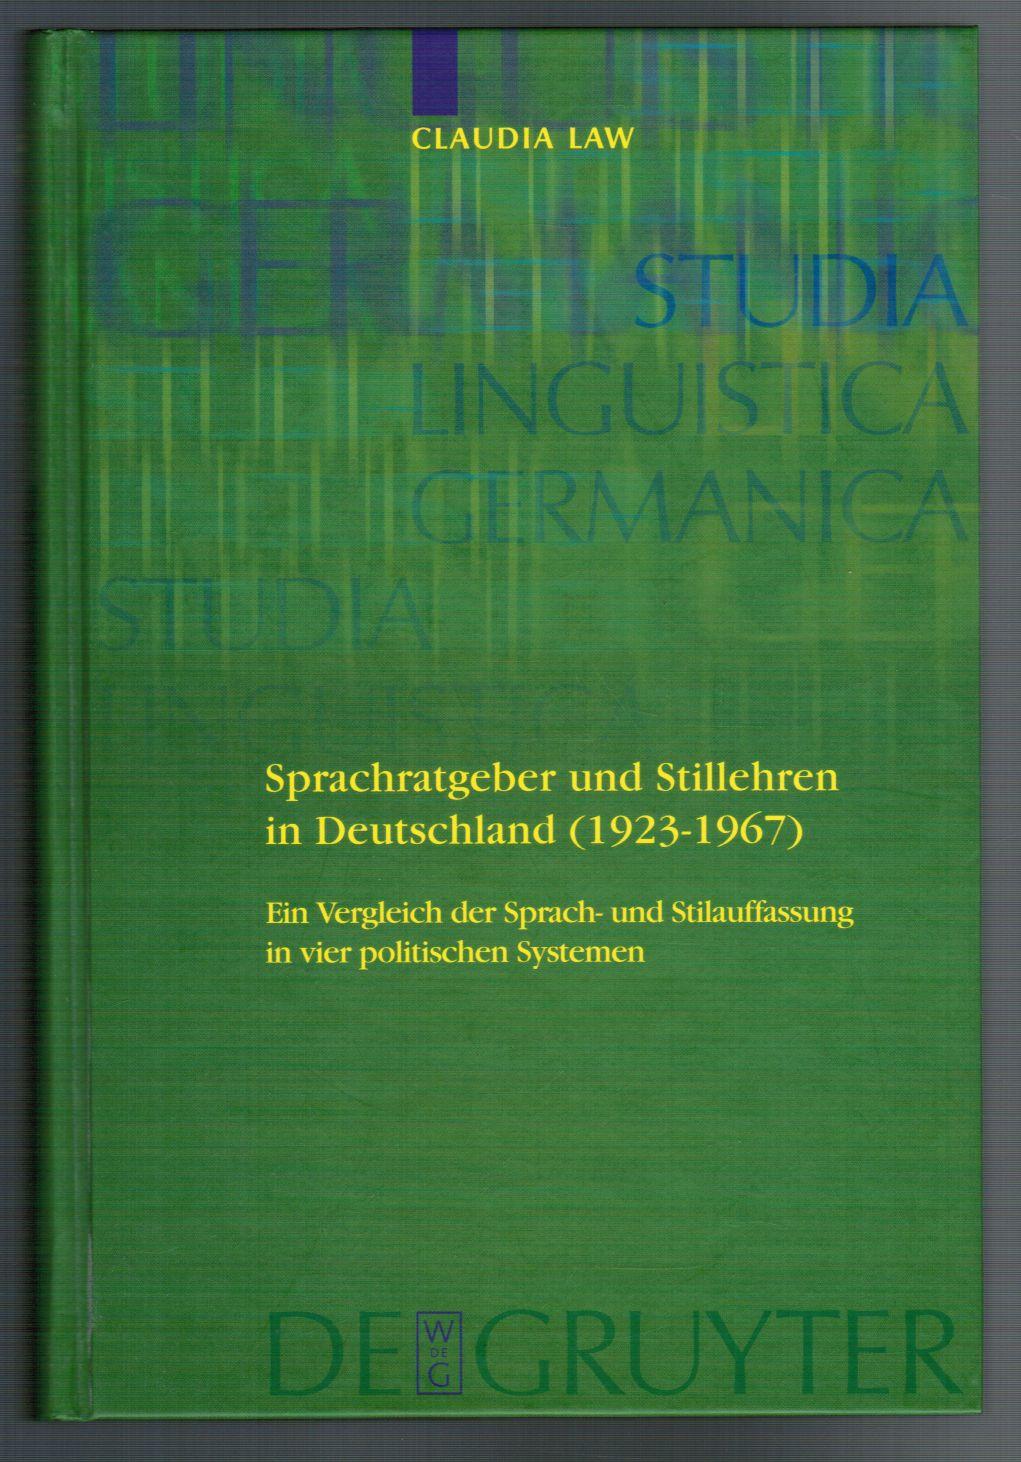 Sprachratgeber und Stillehren in Deutschland (1923 - 1967). Ein Vergleich der Sprach- und Stilauffassung in vier politischen Systemen. (Studia Linguistica Germanica : 84). - Law, Claudia